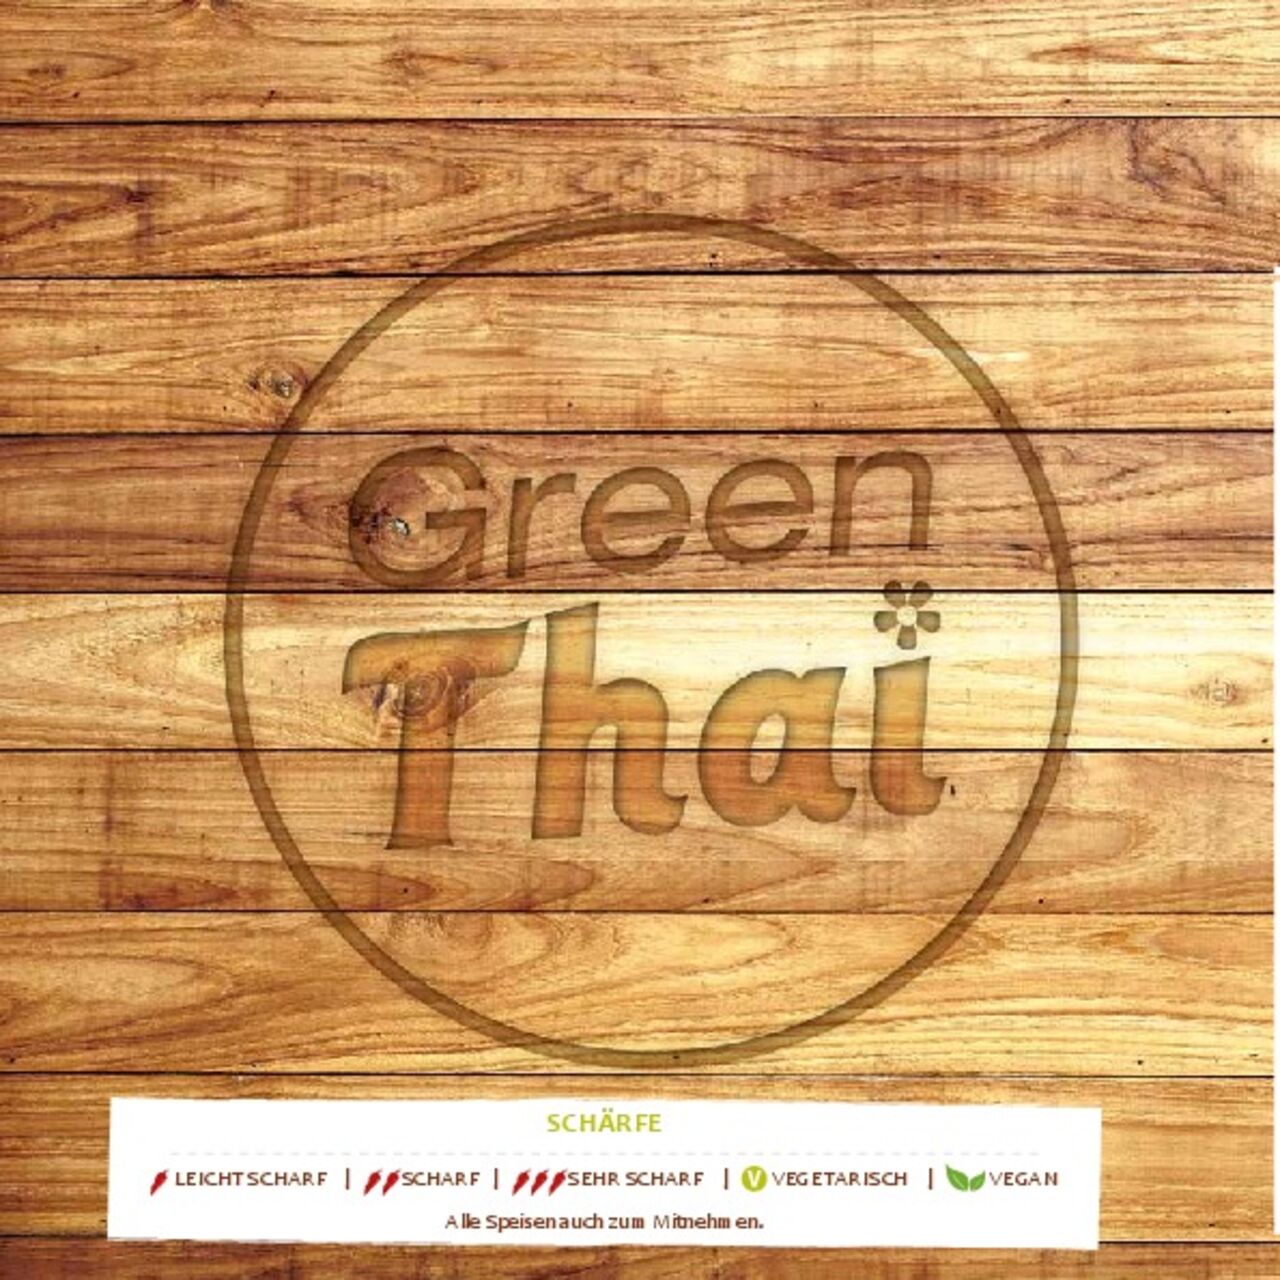 A photo of Green Thai